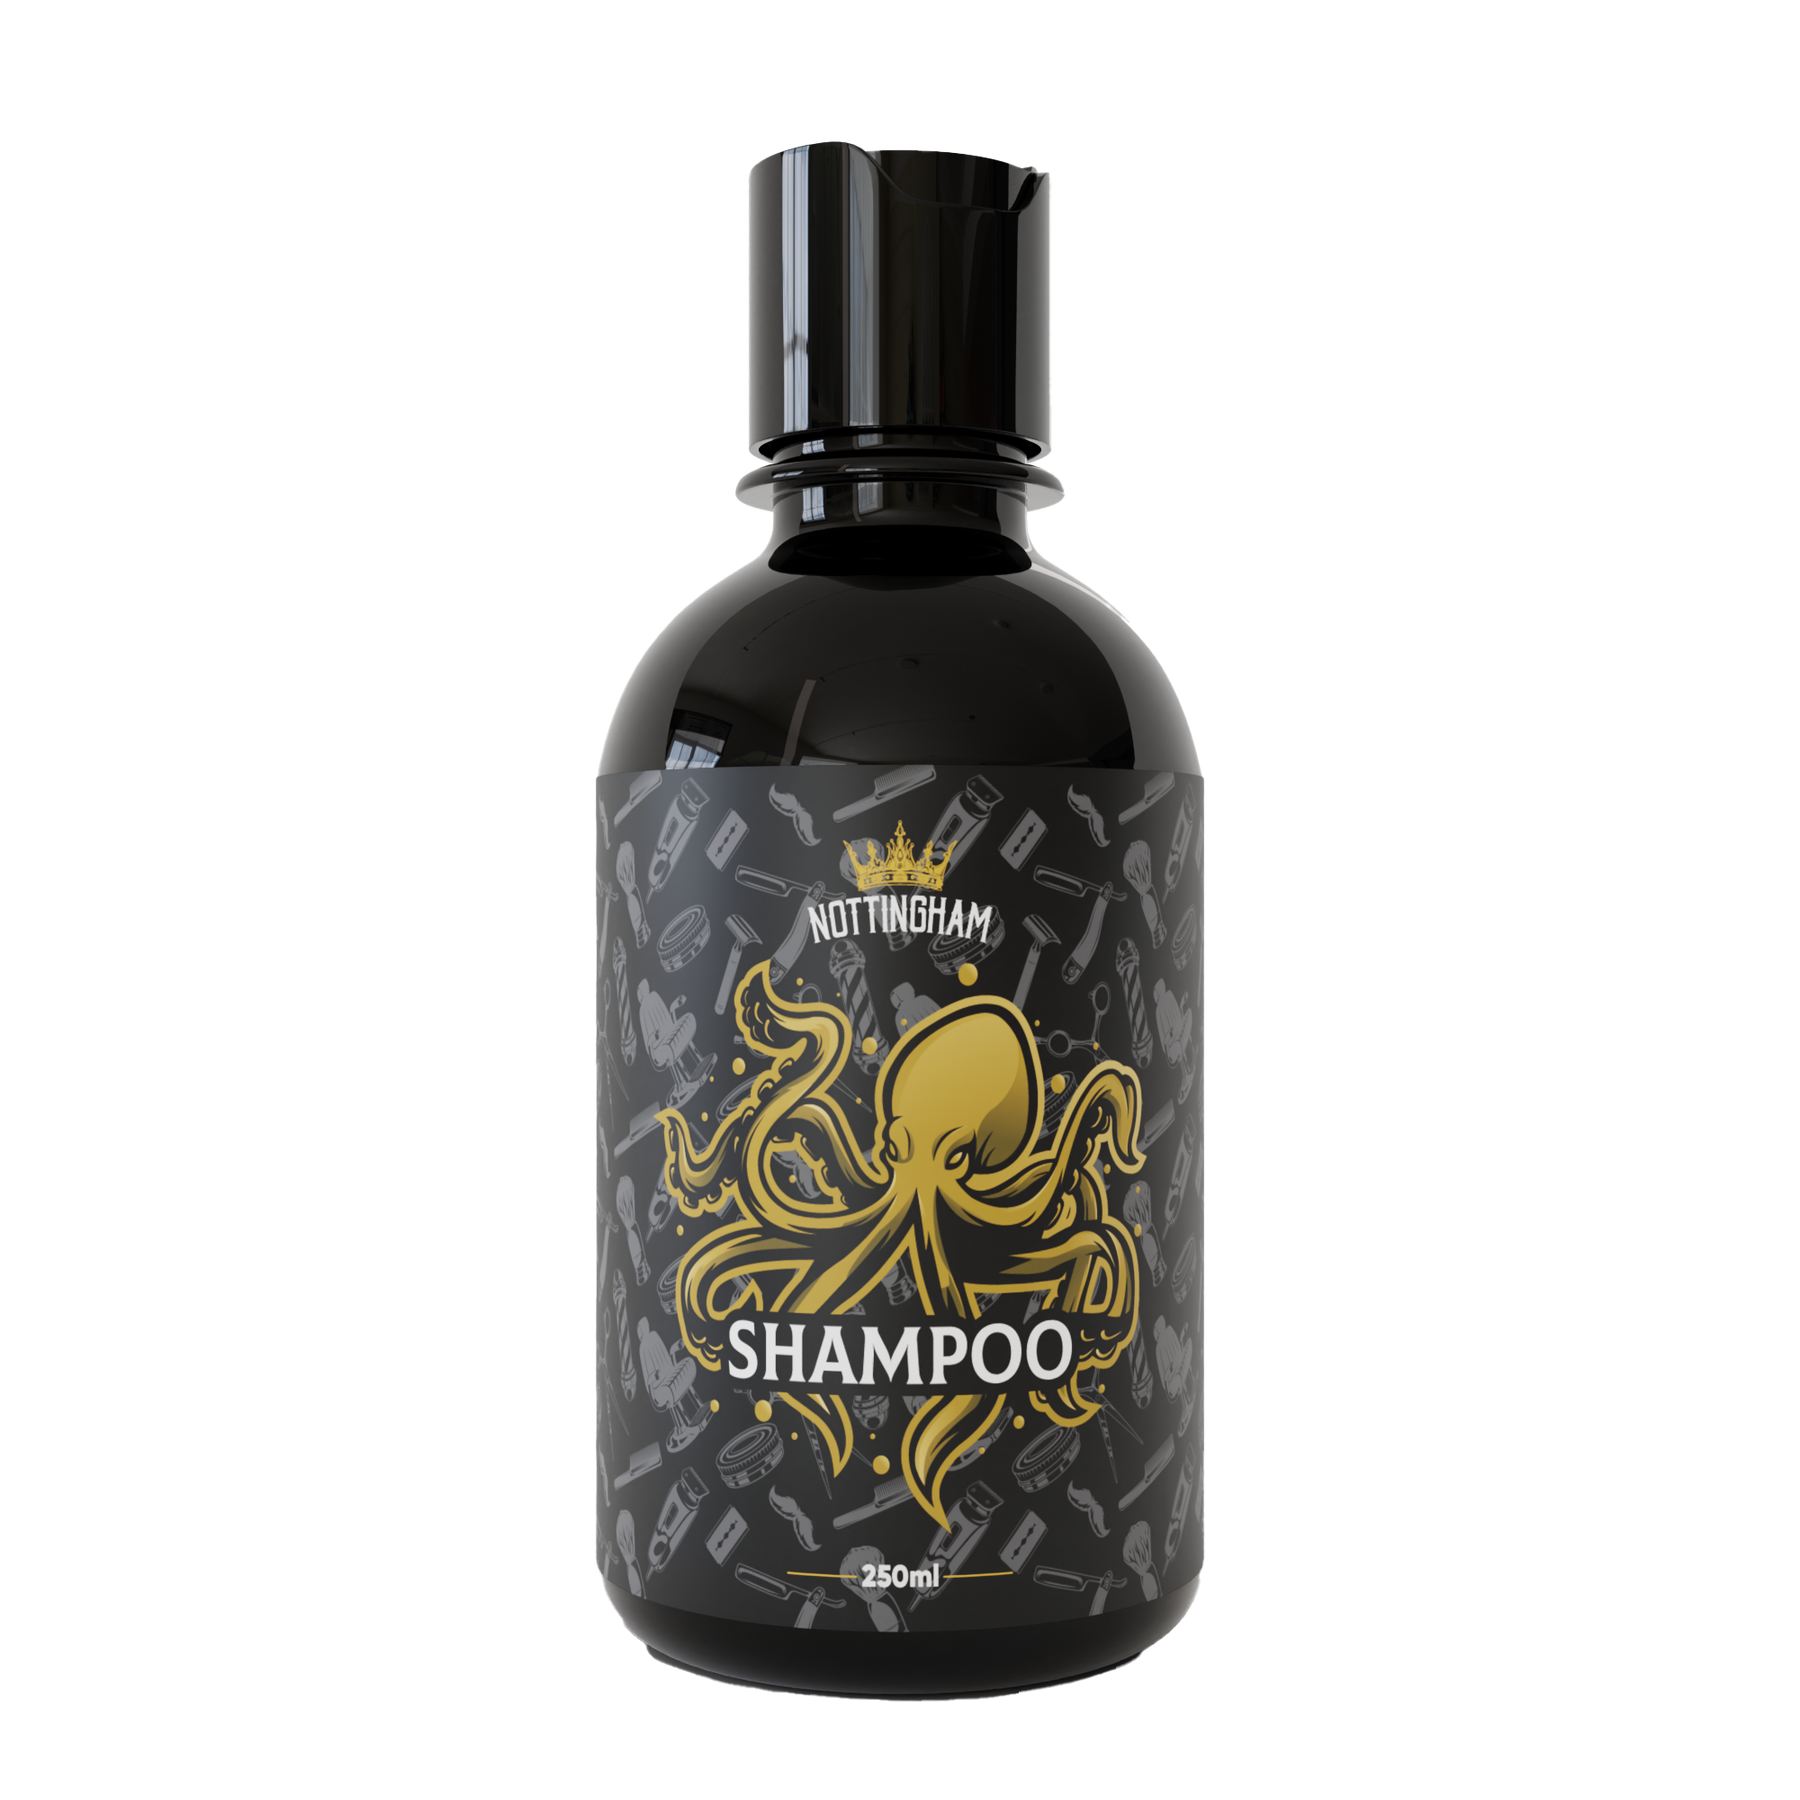 Kit Master Barba - Shampoo + Balm + Óleo